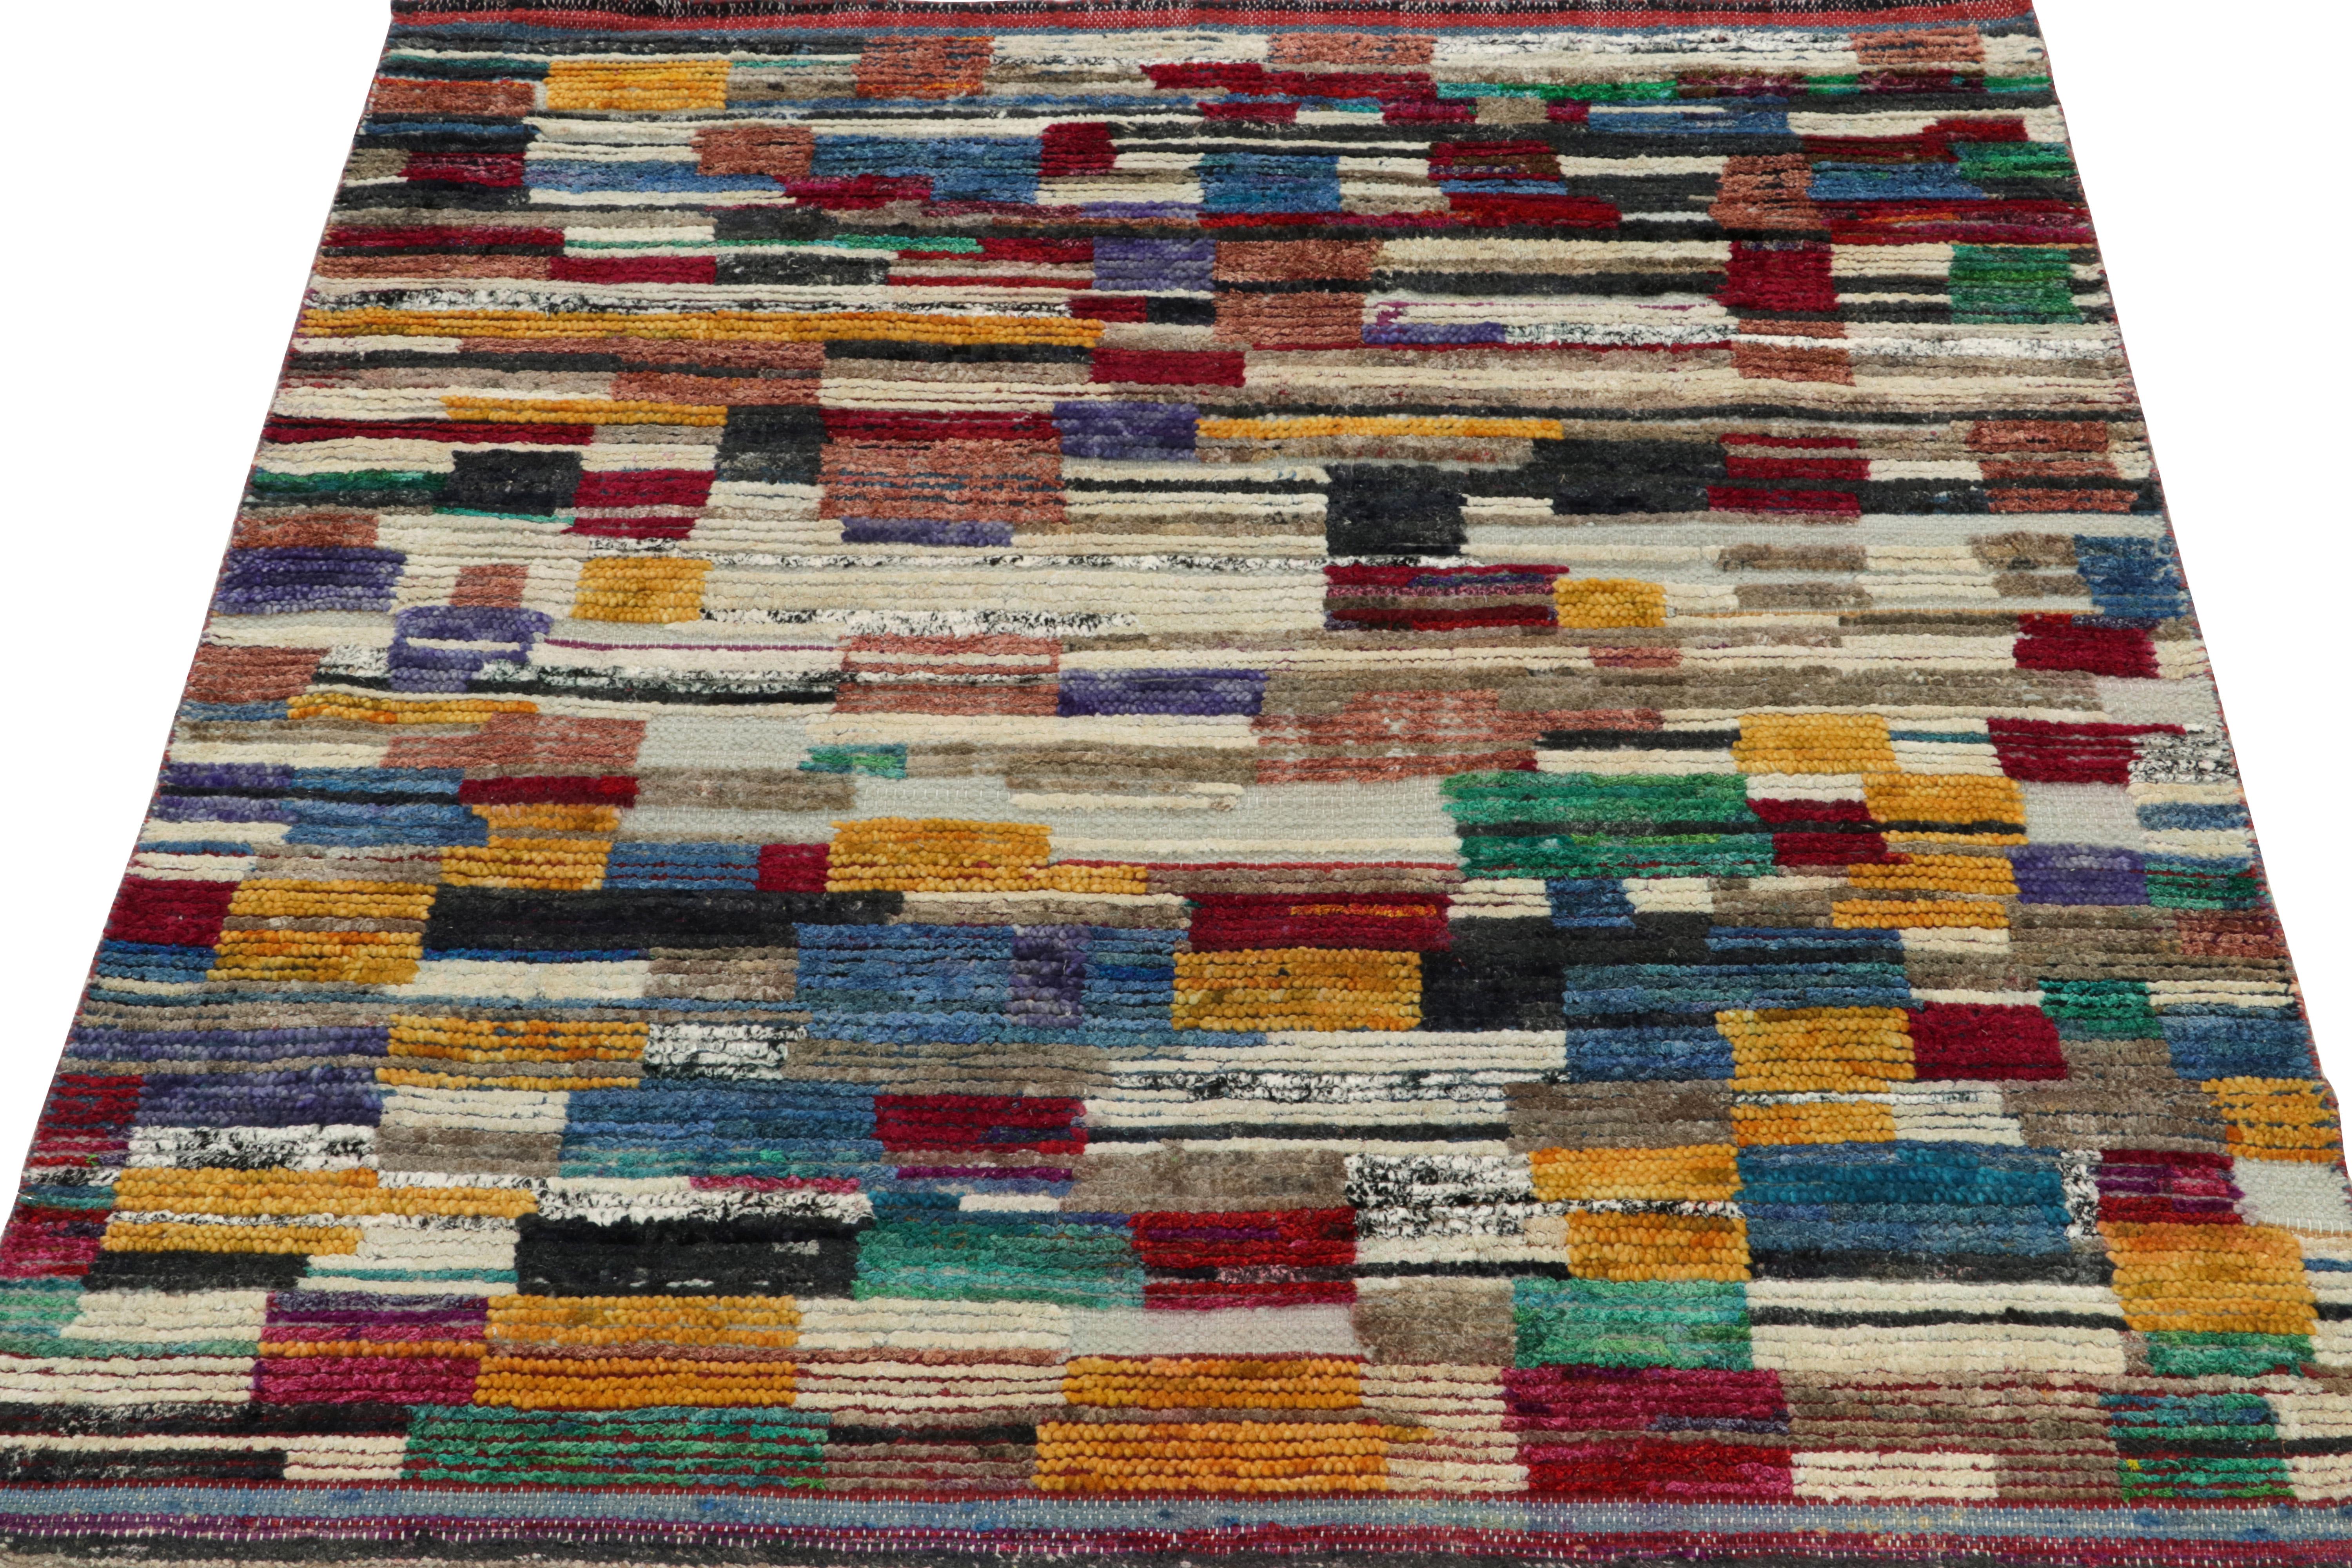 Rug & Kilims erfinderische Hommage an das marokkanische Teppichdesign, das ein verlockendes Spiel aus bunten Gold-, Scharlachrot-, Blau-, Weiß- und Grüntönen bietet, die nahtlos in eine mehrfarbige, gestreifte Bordüre übergehen. Der handgeknüpfte